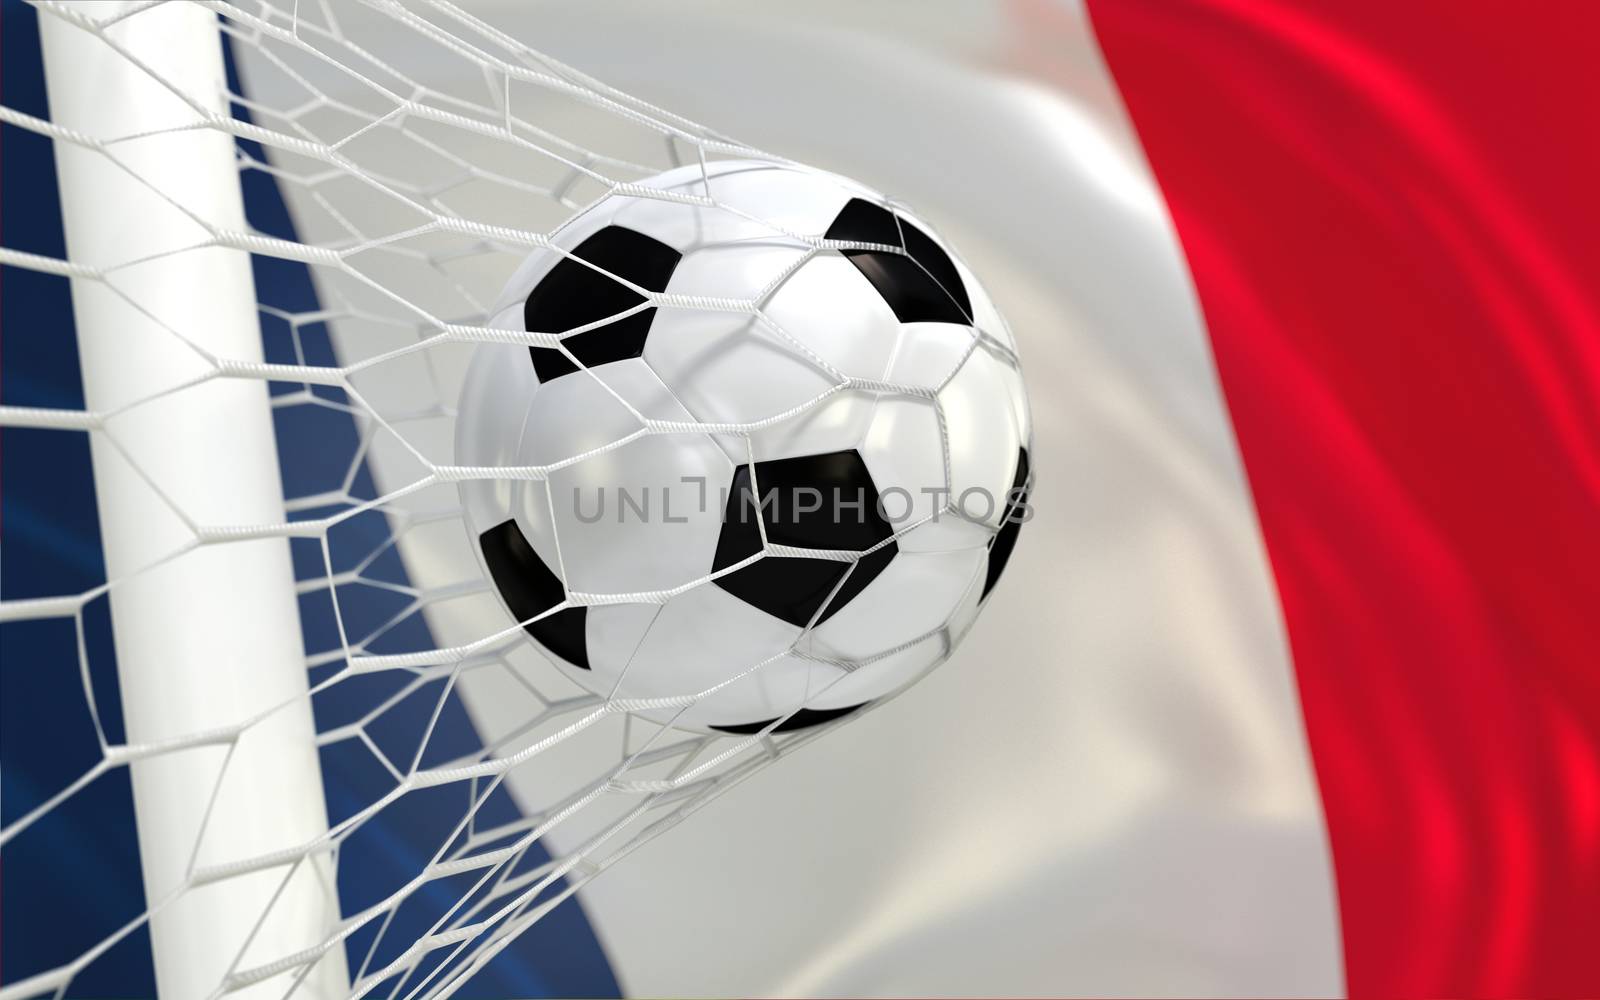 France flag and soccer ball, football in goal net